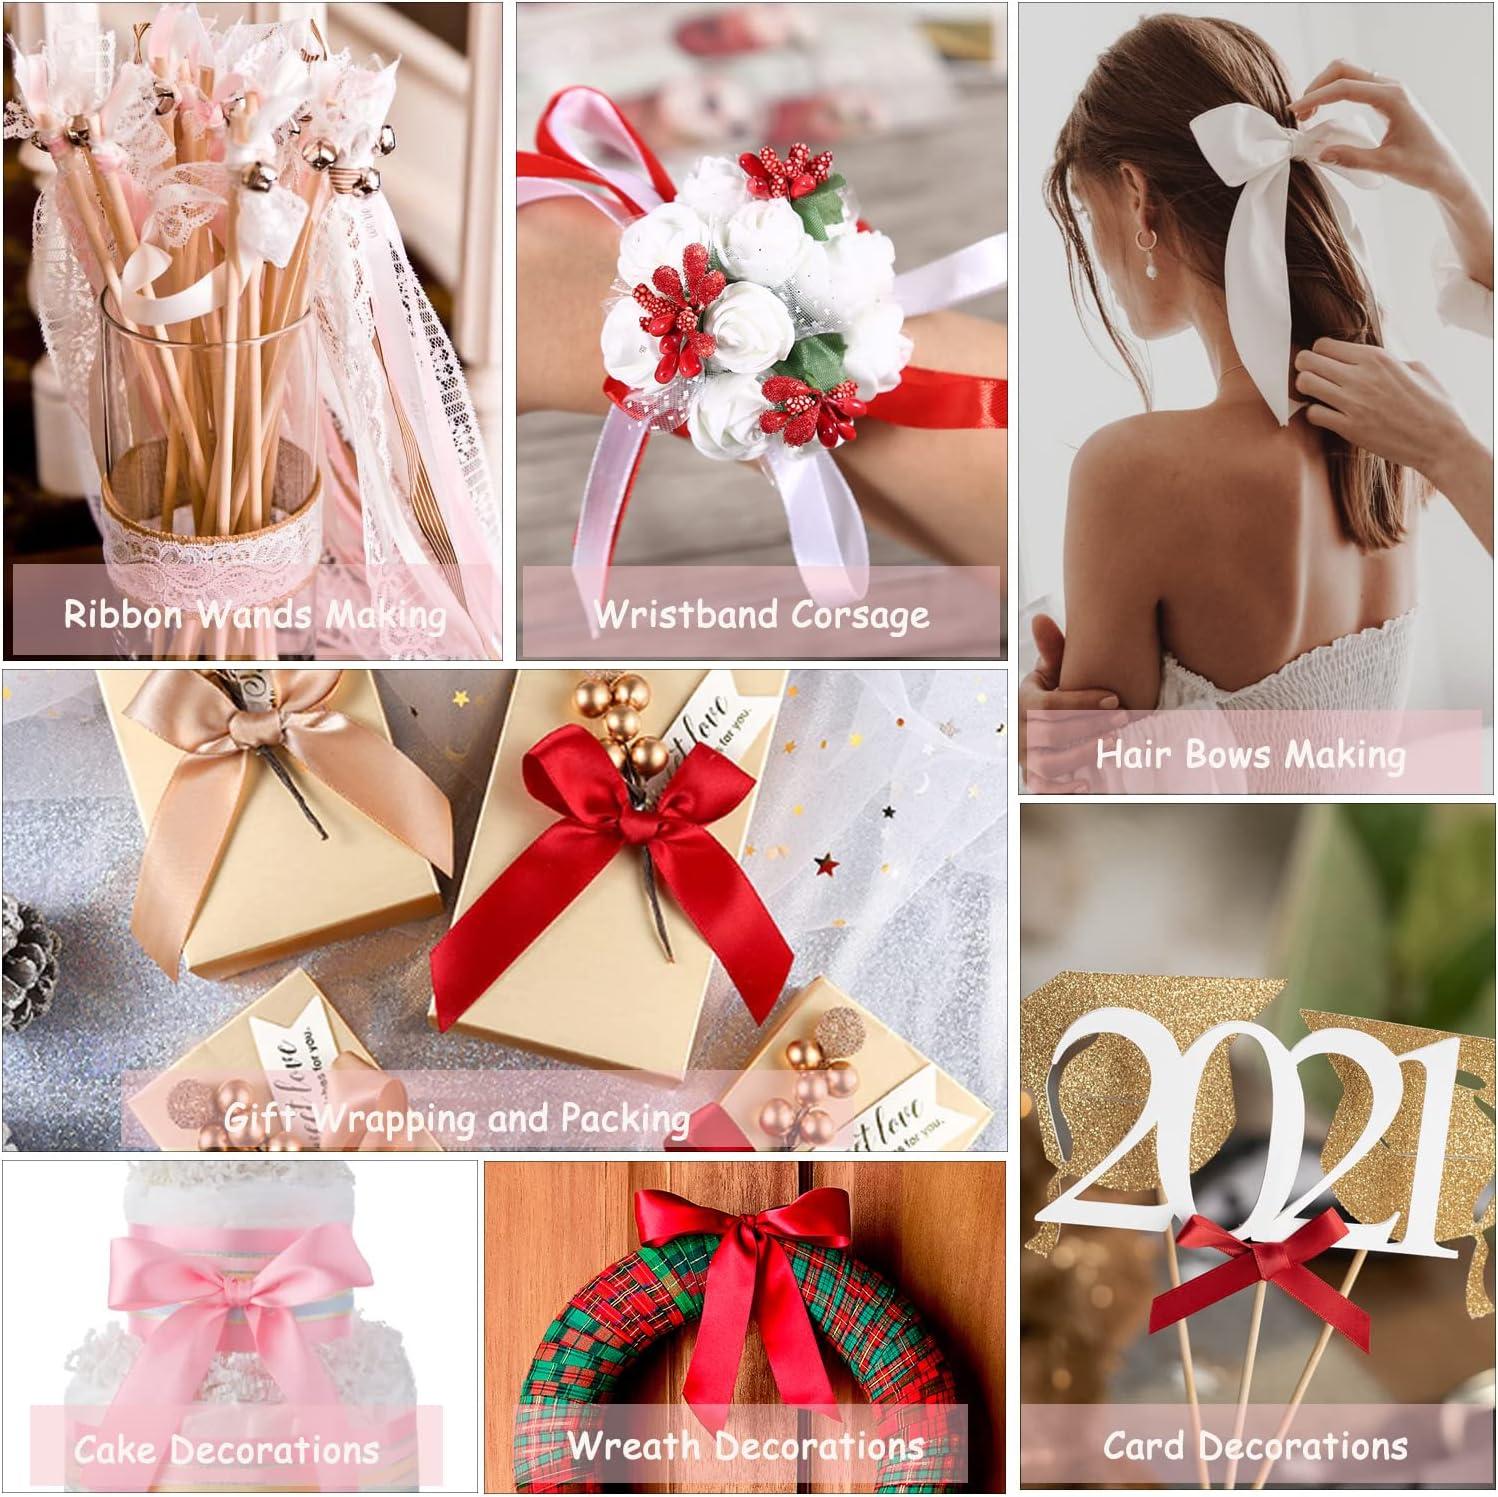 Hot Pink Ribbon 1-1/2 Inch, 25 Yards Satin Fabric Ribbons for Christmas  Gift Wrapping, Christmas Garland, Christmas Tree Ornaments, Bows Making,  DIY